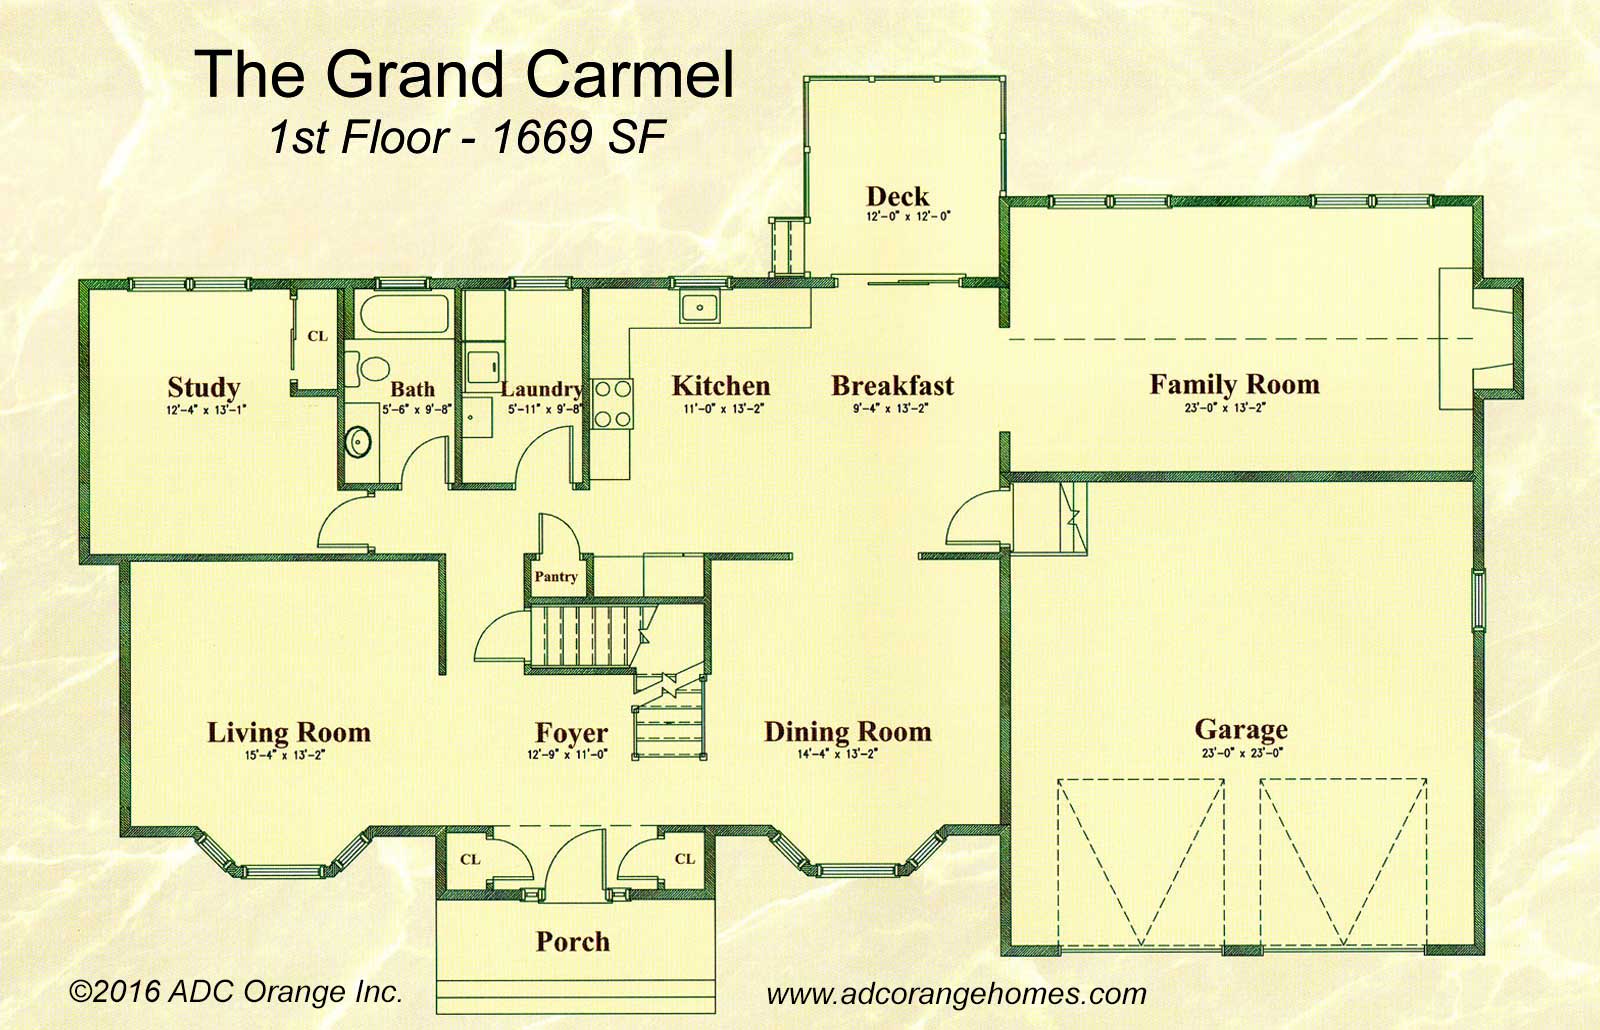 1st Floor Plan for Grand Carmel - New Home in Orange County, New York